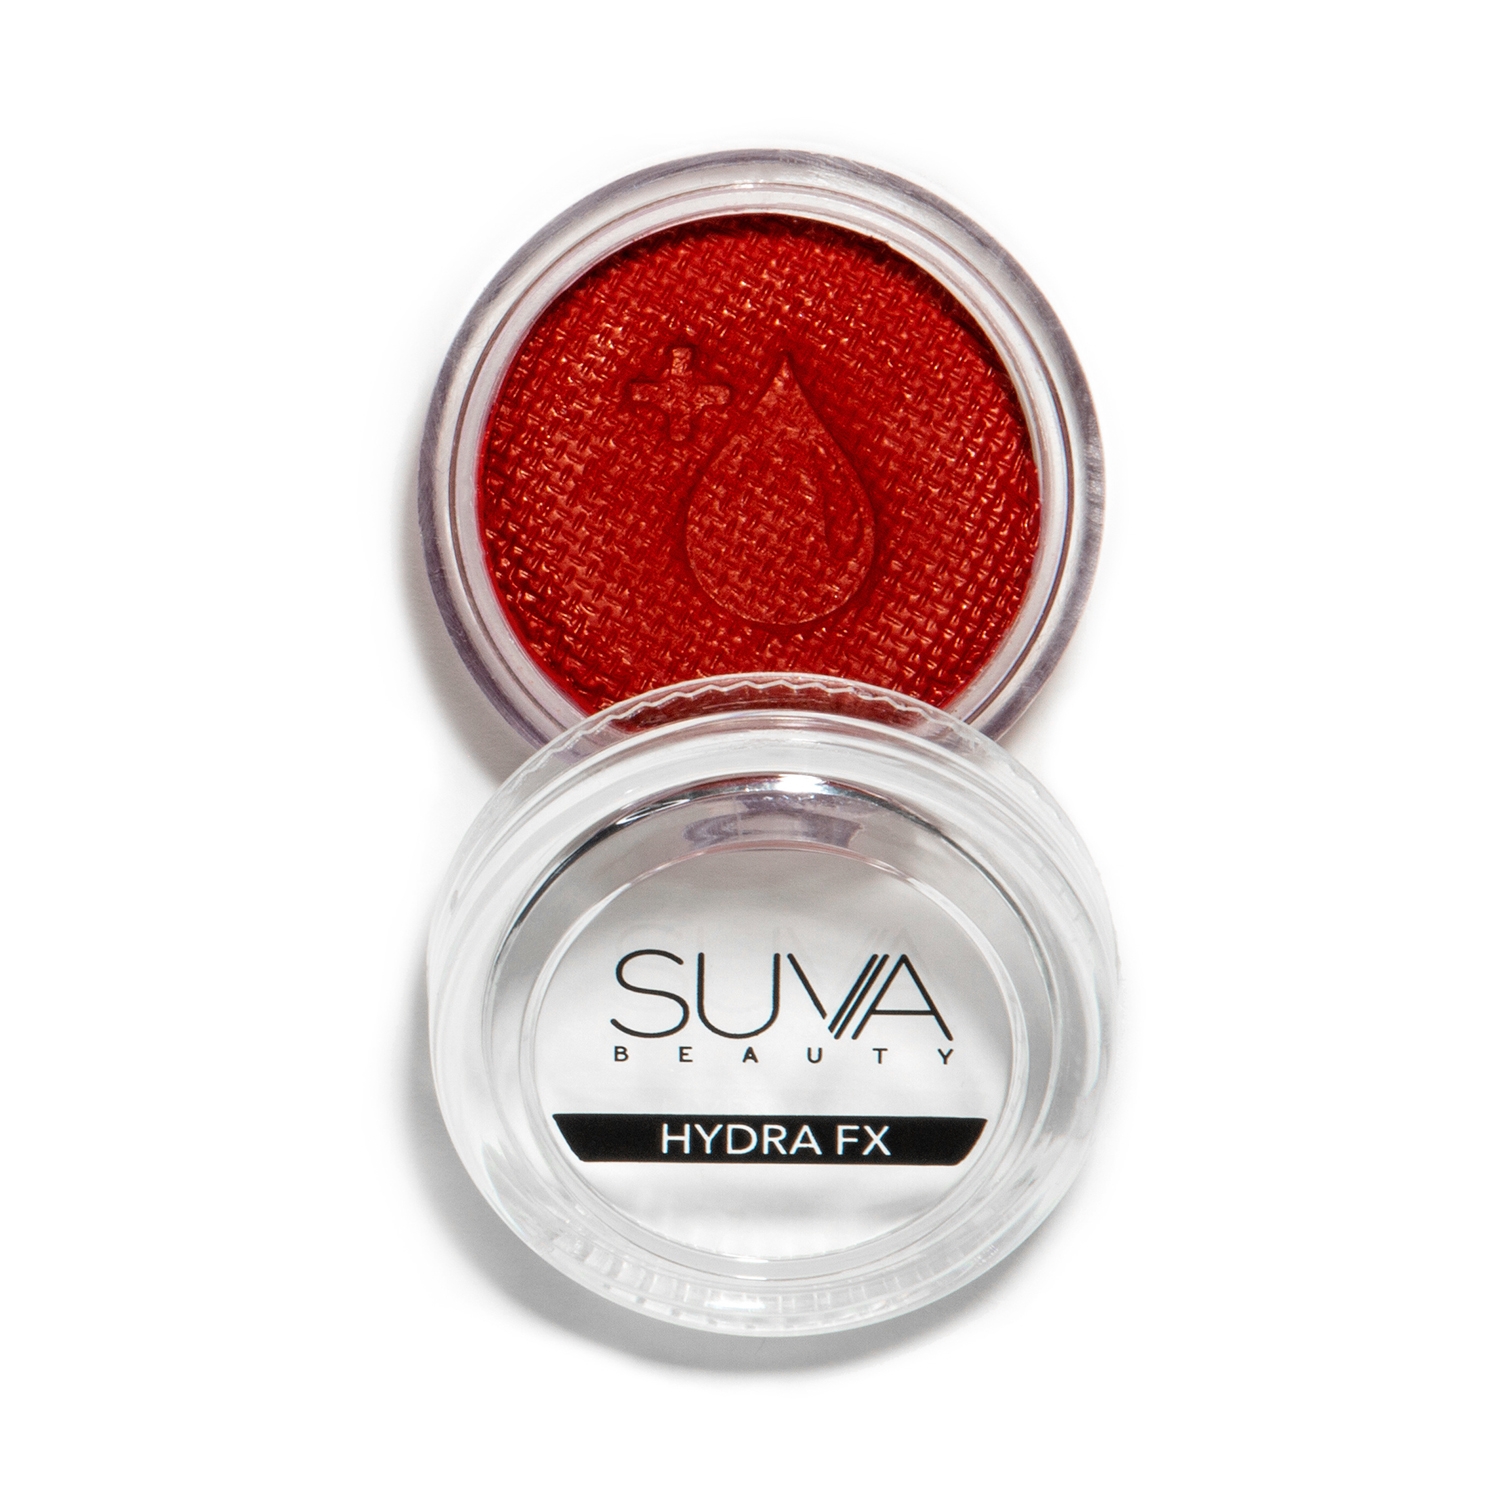 SUVA Beauty | SUVA Beauty Hydra FX Eyeliner - Bomb AF (10g)